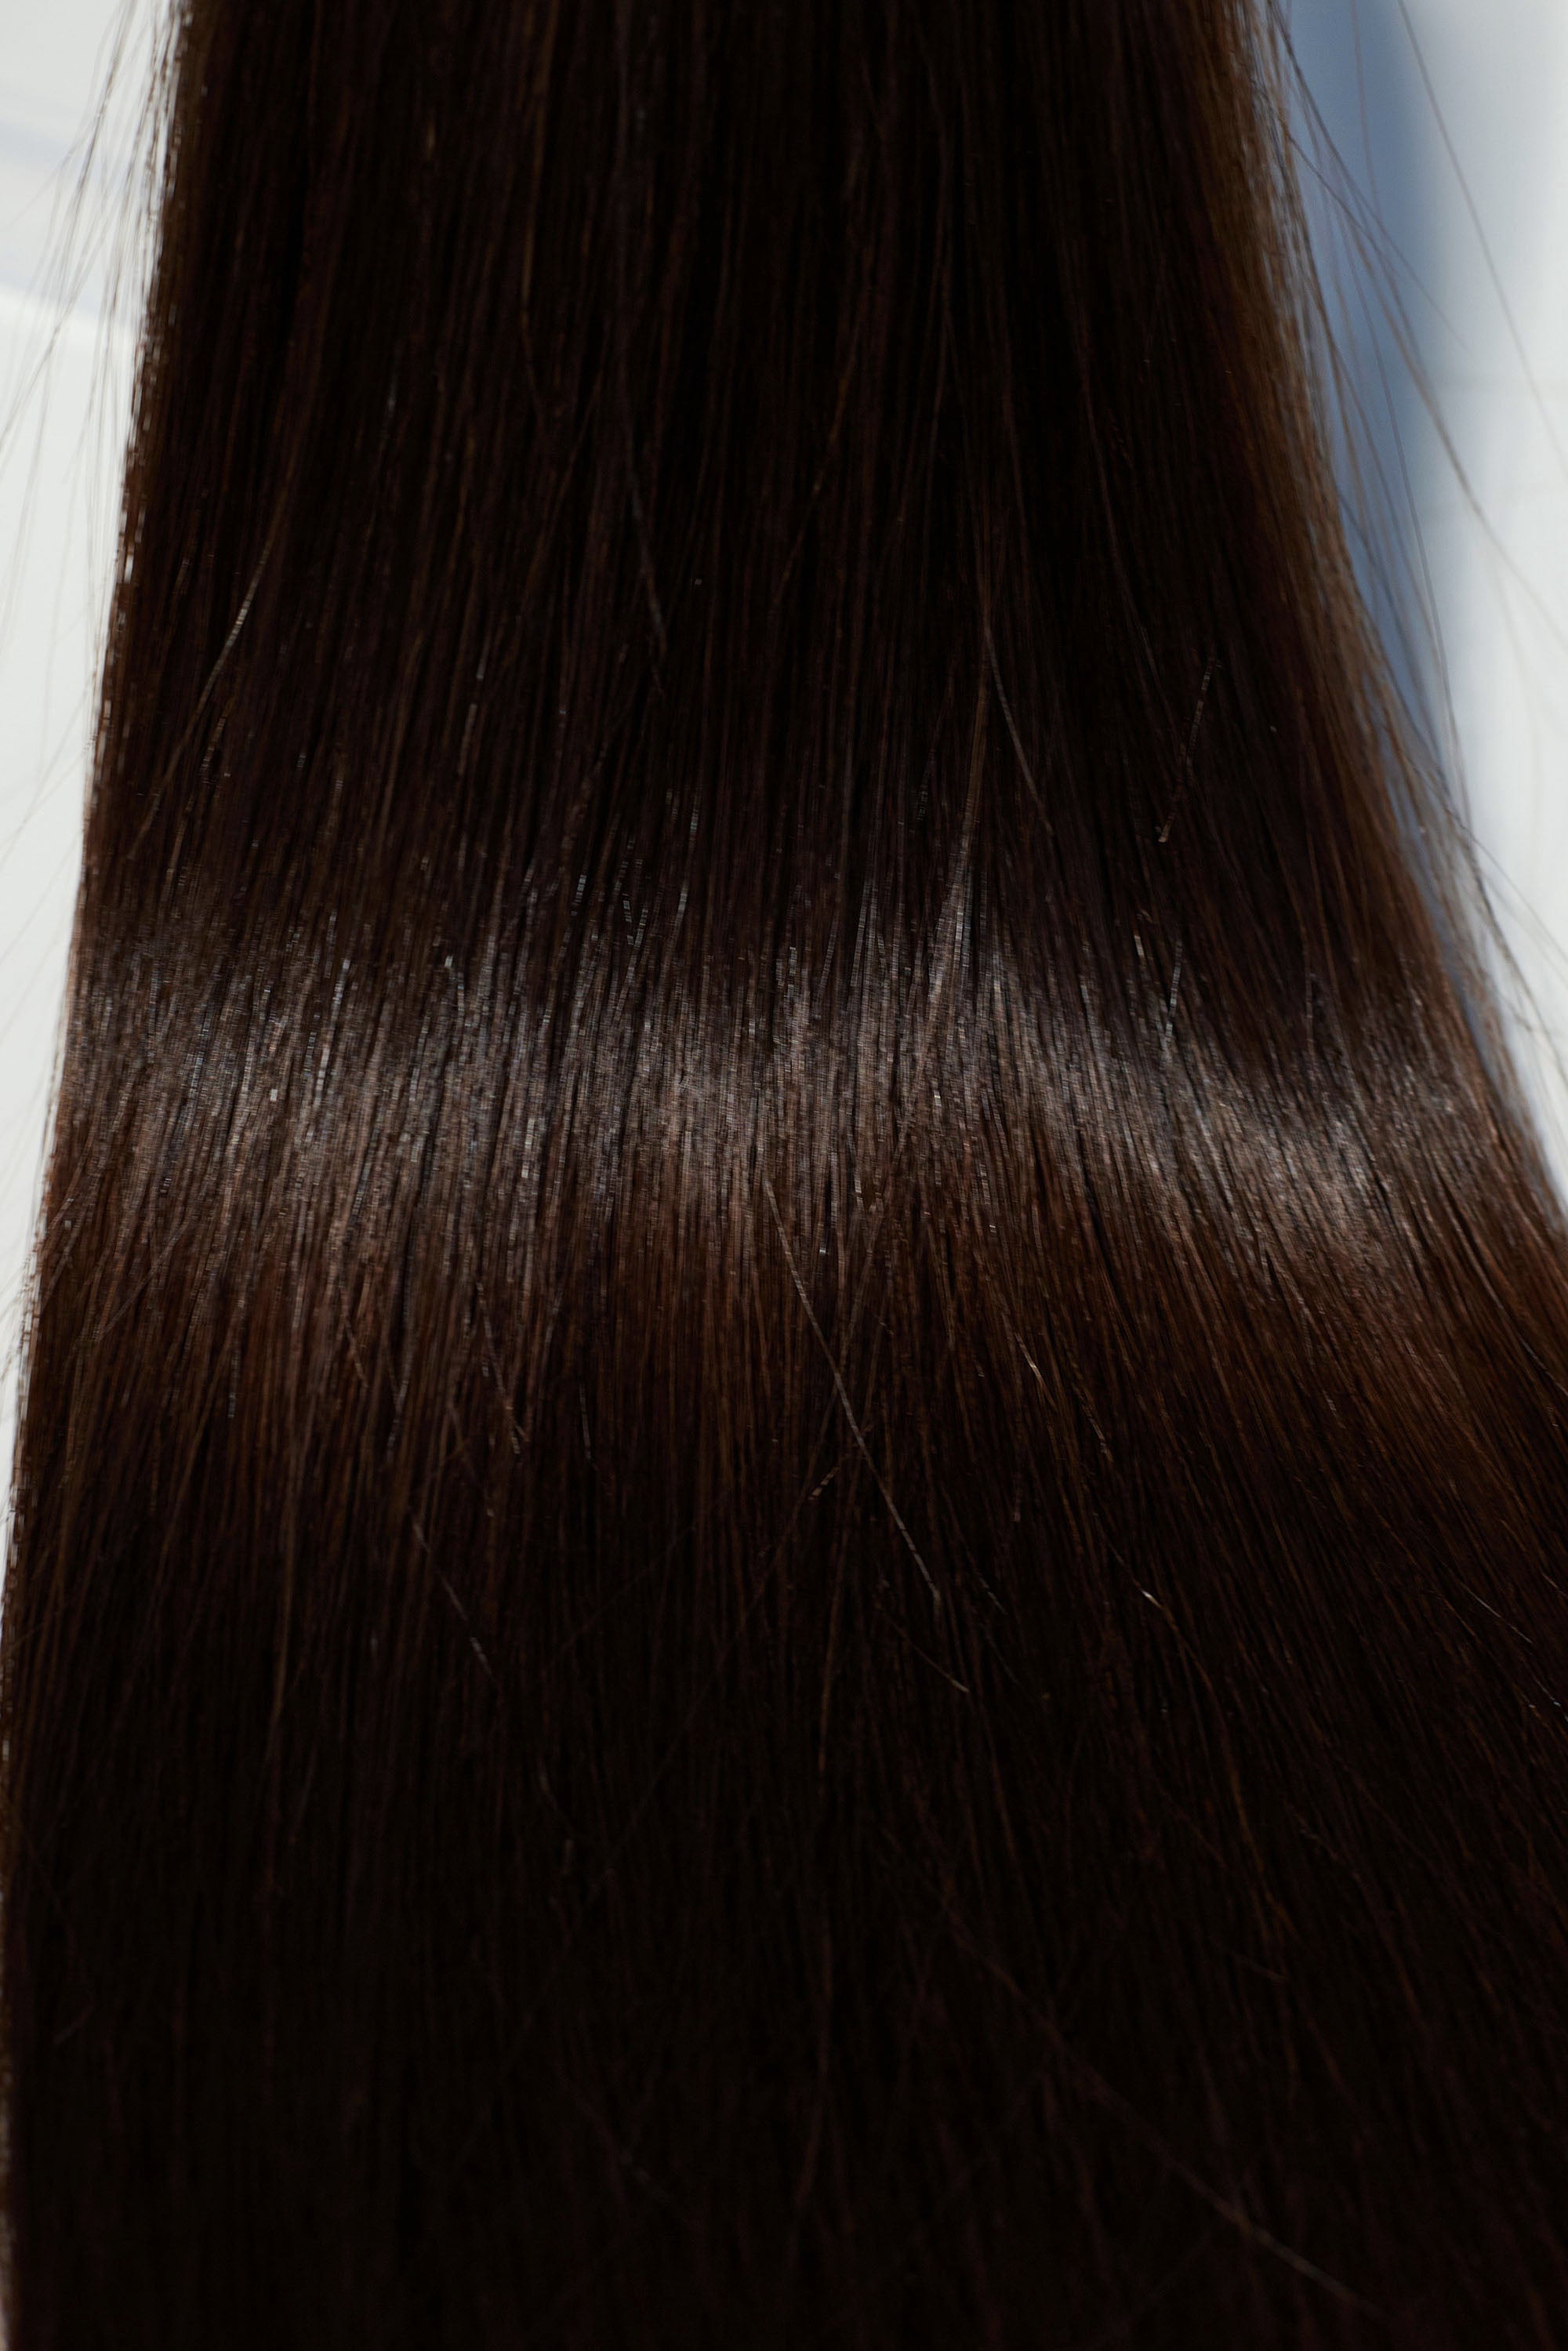 Behair professional Keratin Tip "Premium" 18" (45cm) Natural Straight Dark Coffee Brown #2 - 25g (Micro - 0.5g each pcs) hair extensions